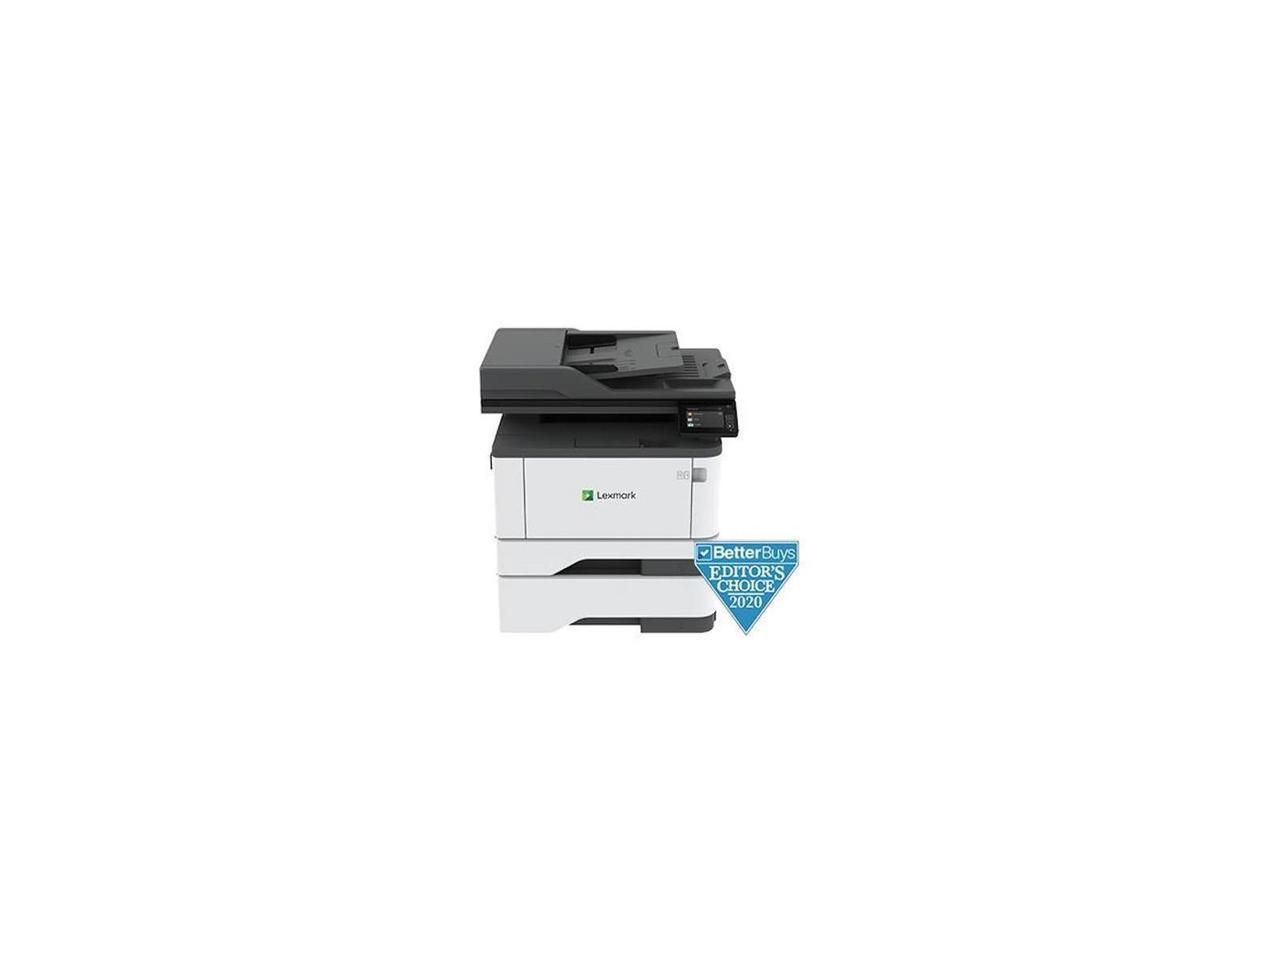 lexmark 5400 series fax printer scanner copier